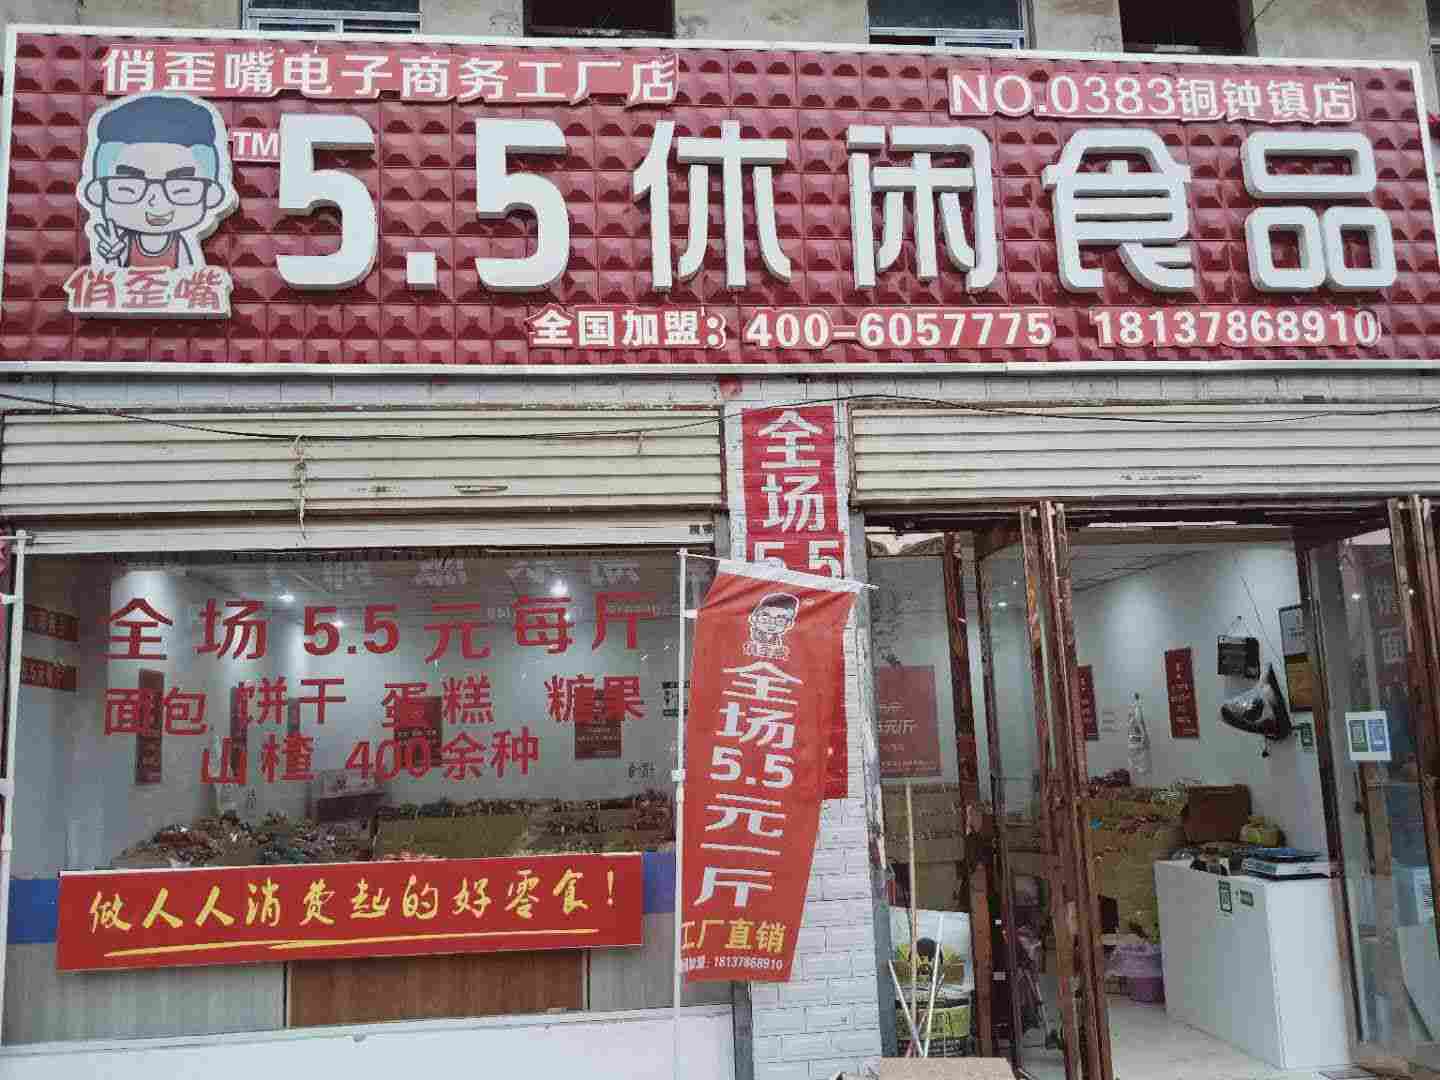 5.5元零食店